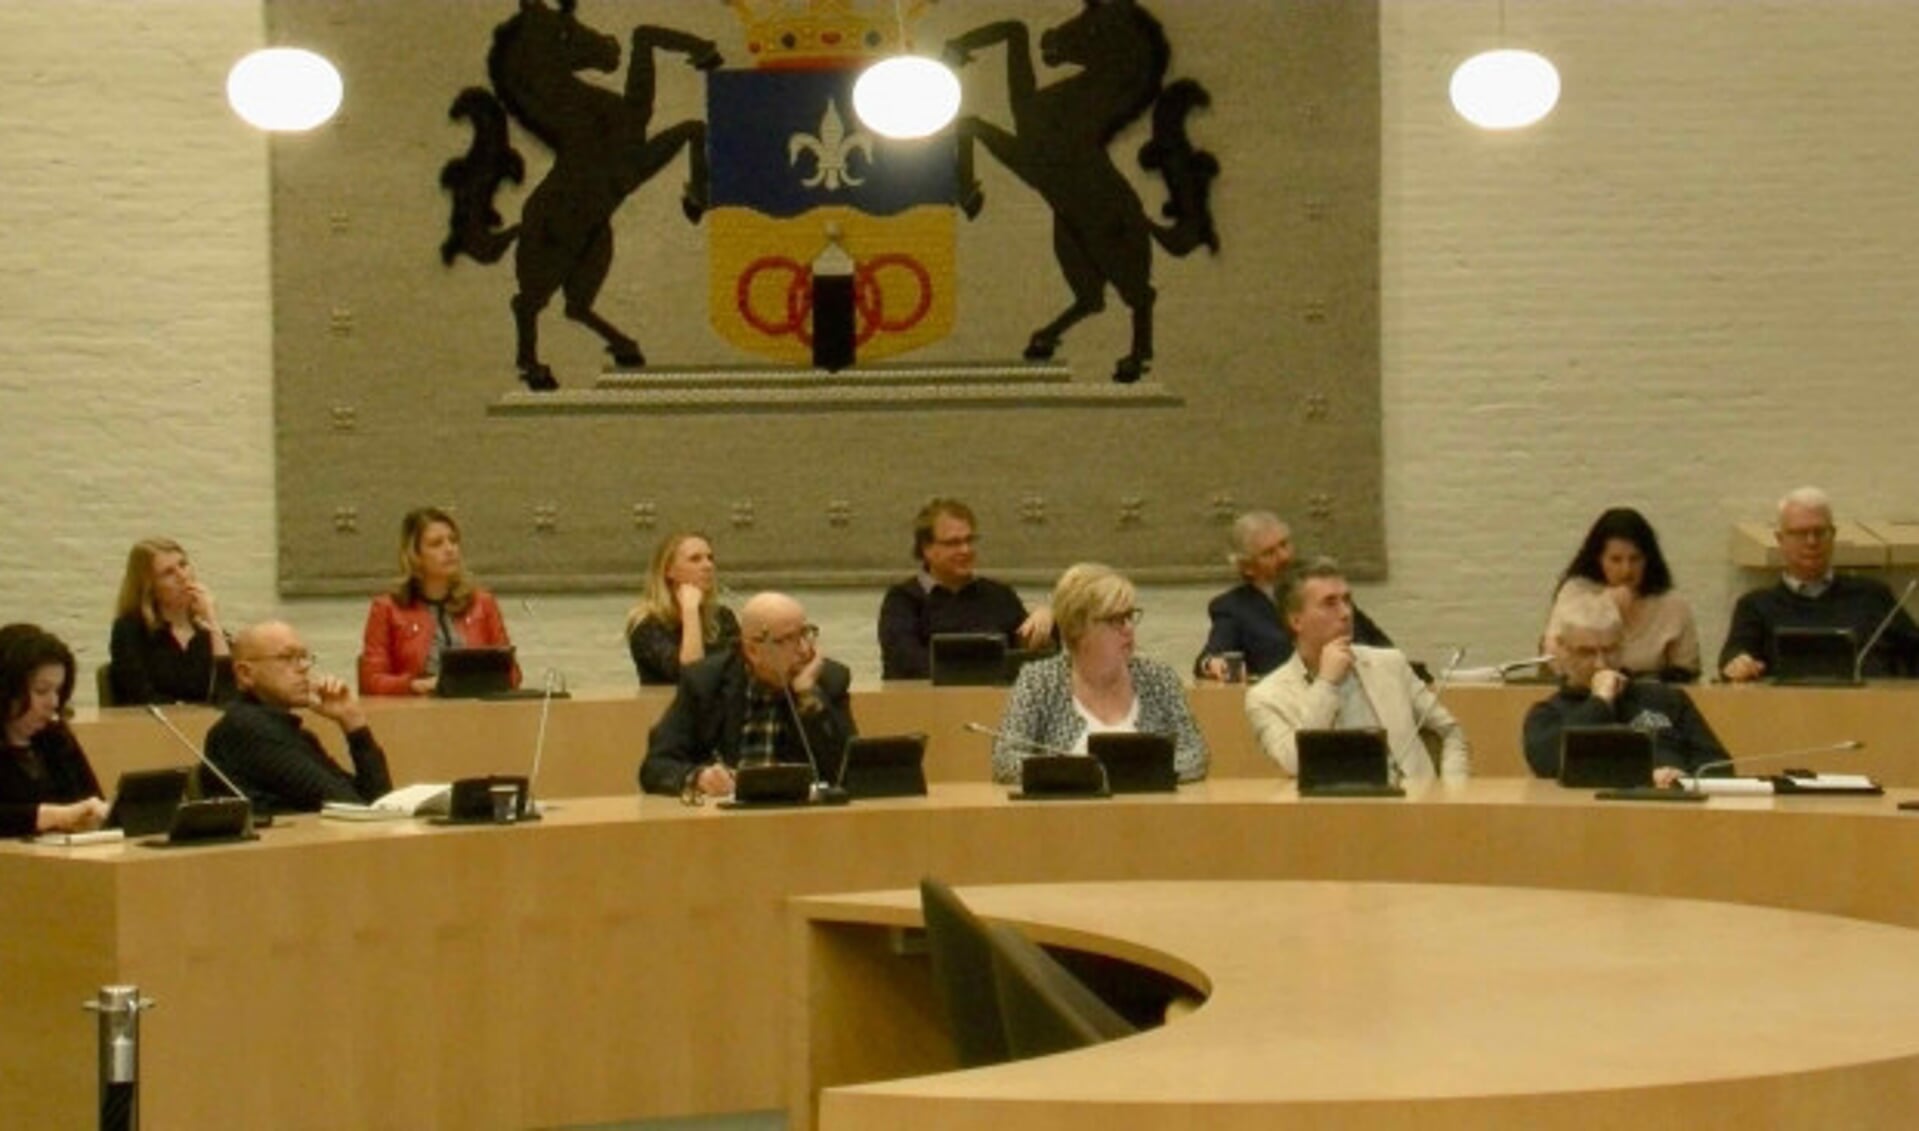  Raadsleden luisteren naar een uitleg over het gemeentehuis.